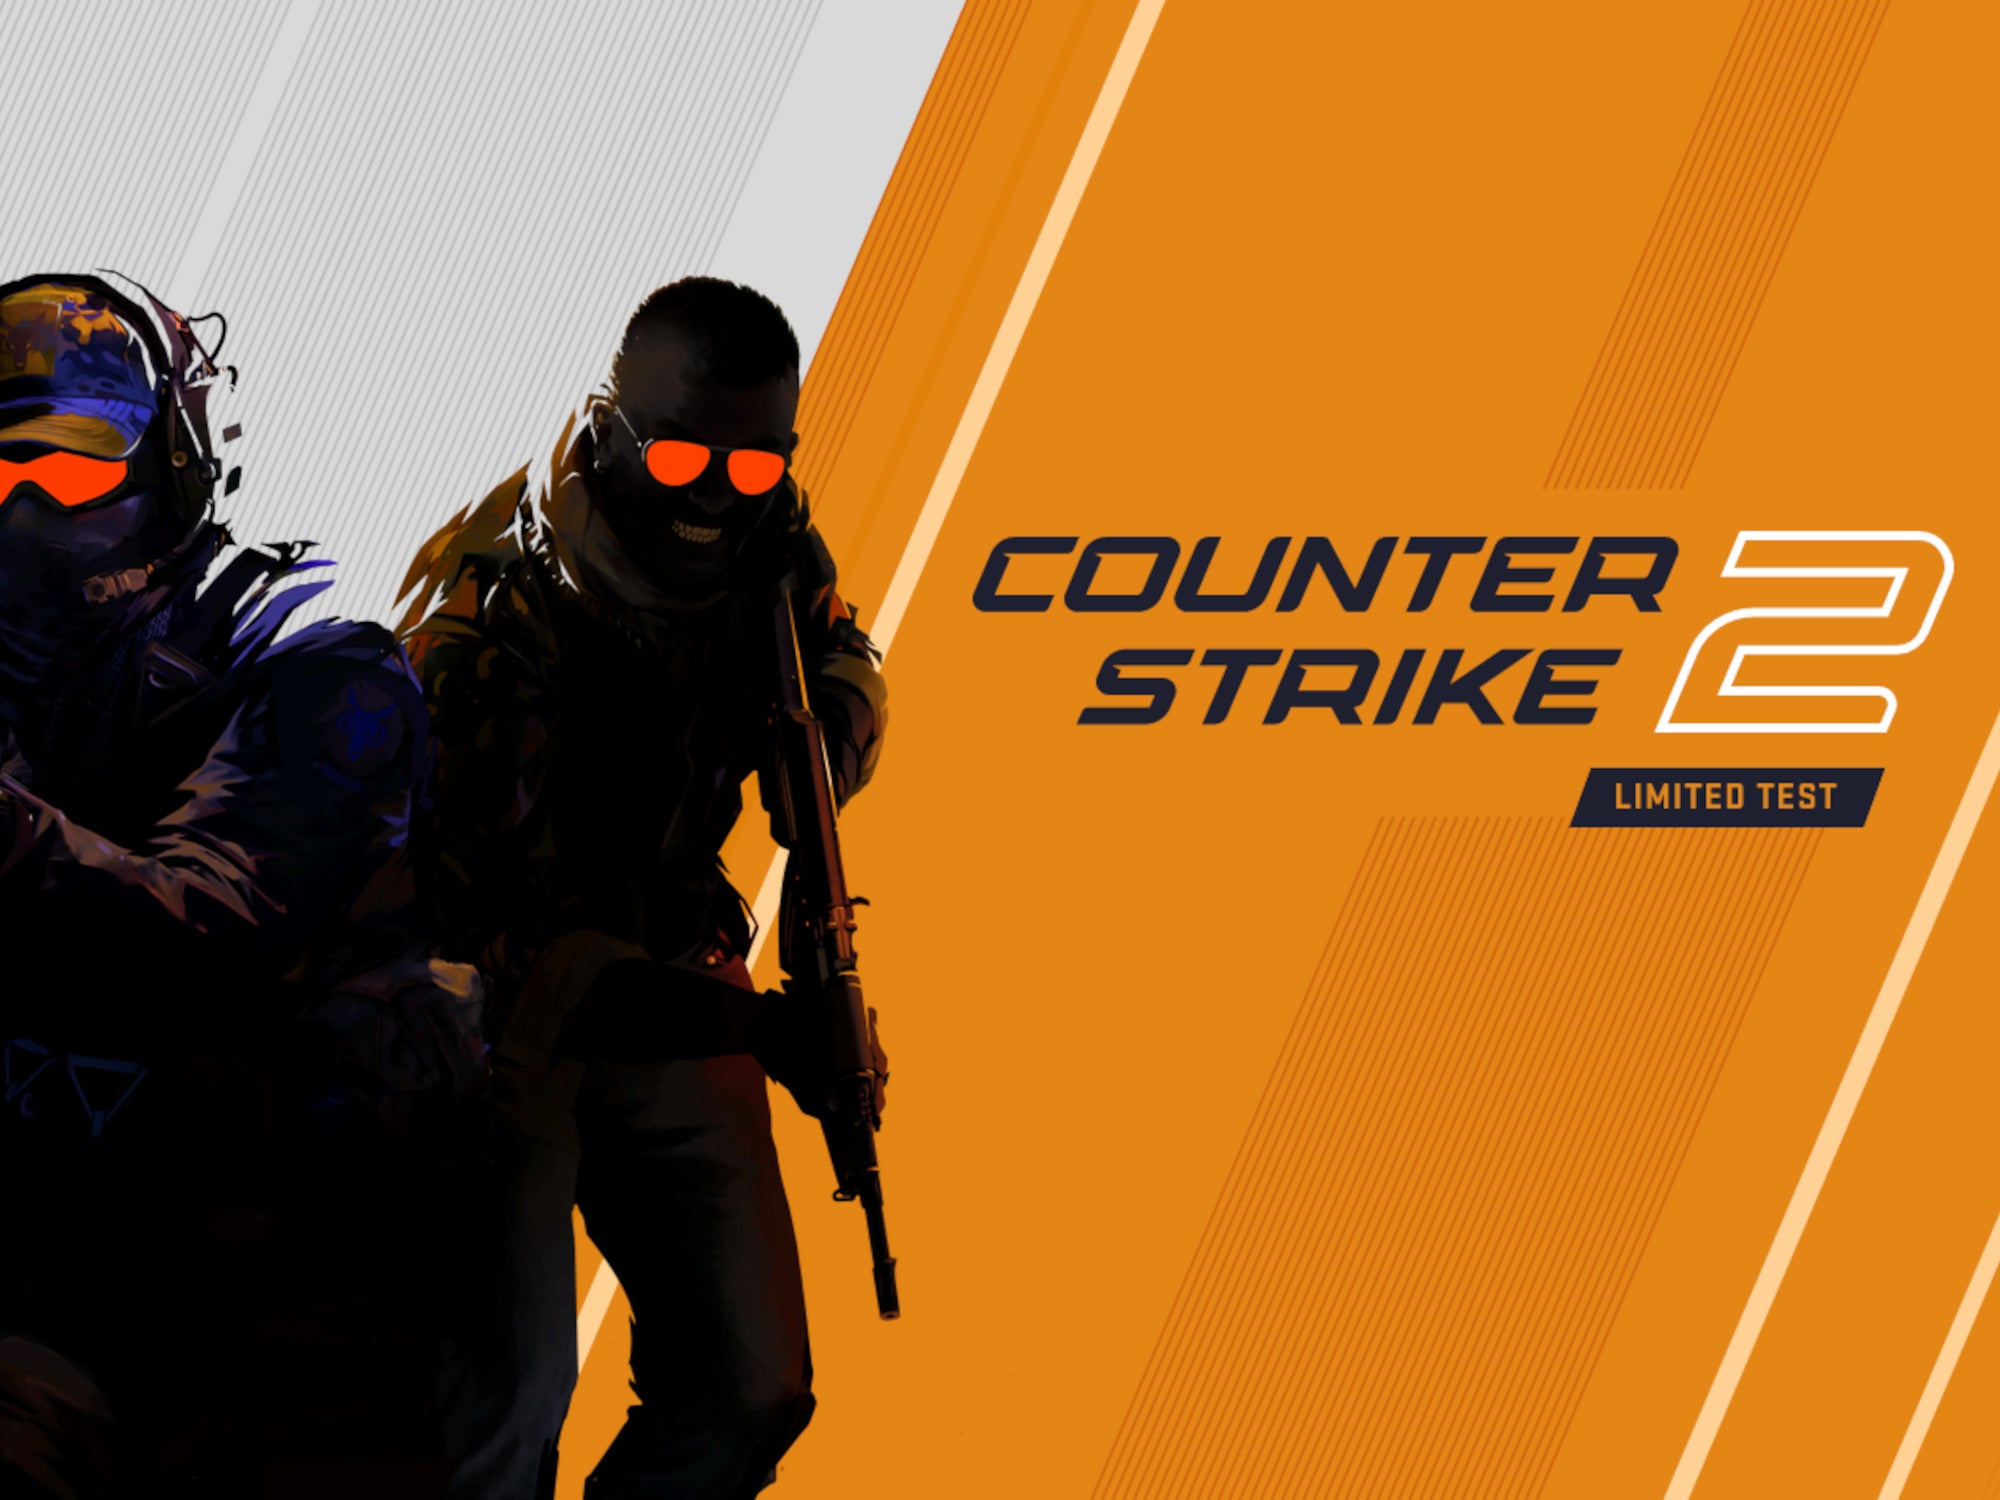 #Counter Strike 2: Diese Neuerungen verändern das ganze Spiel